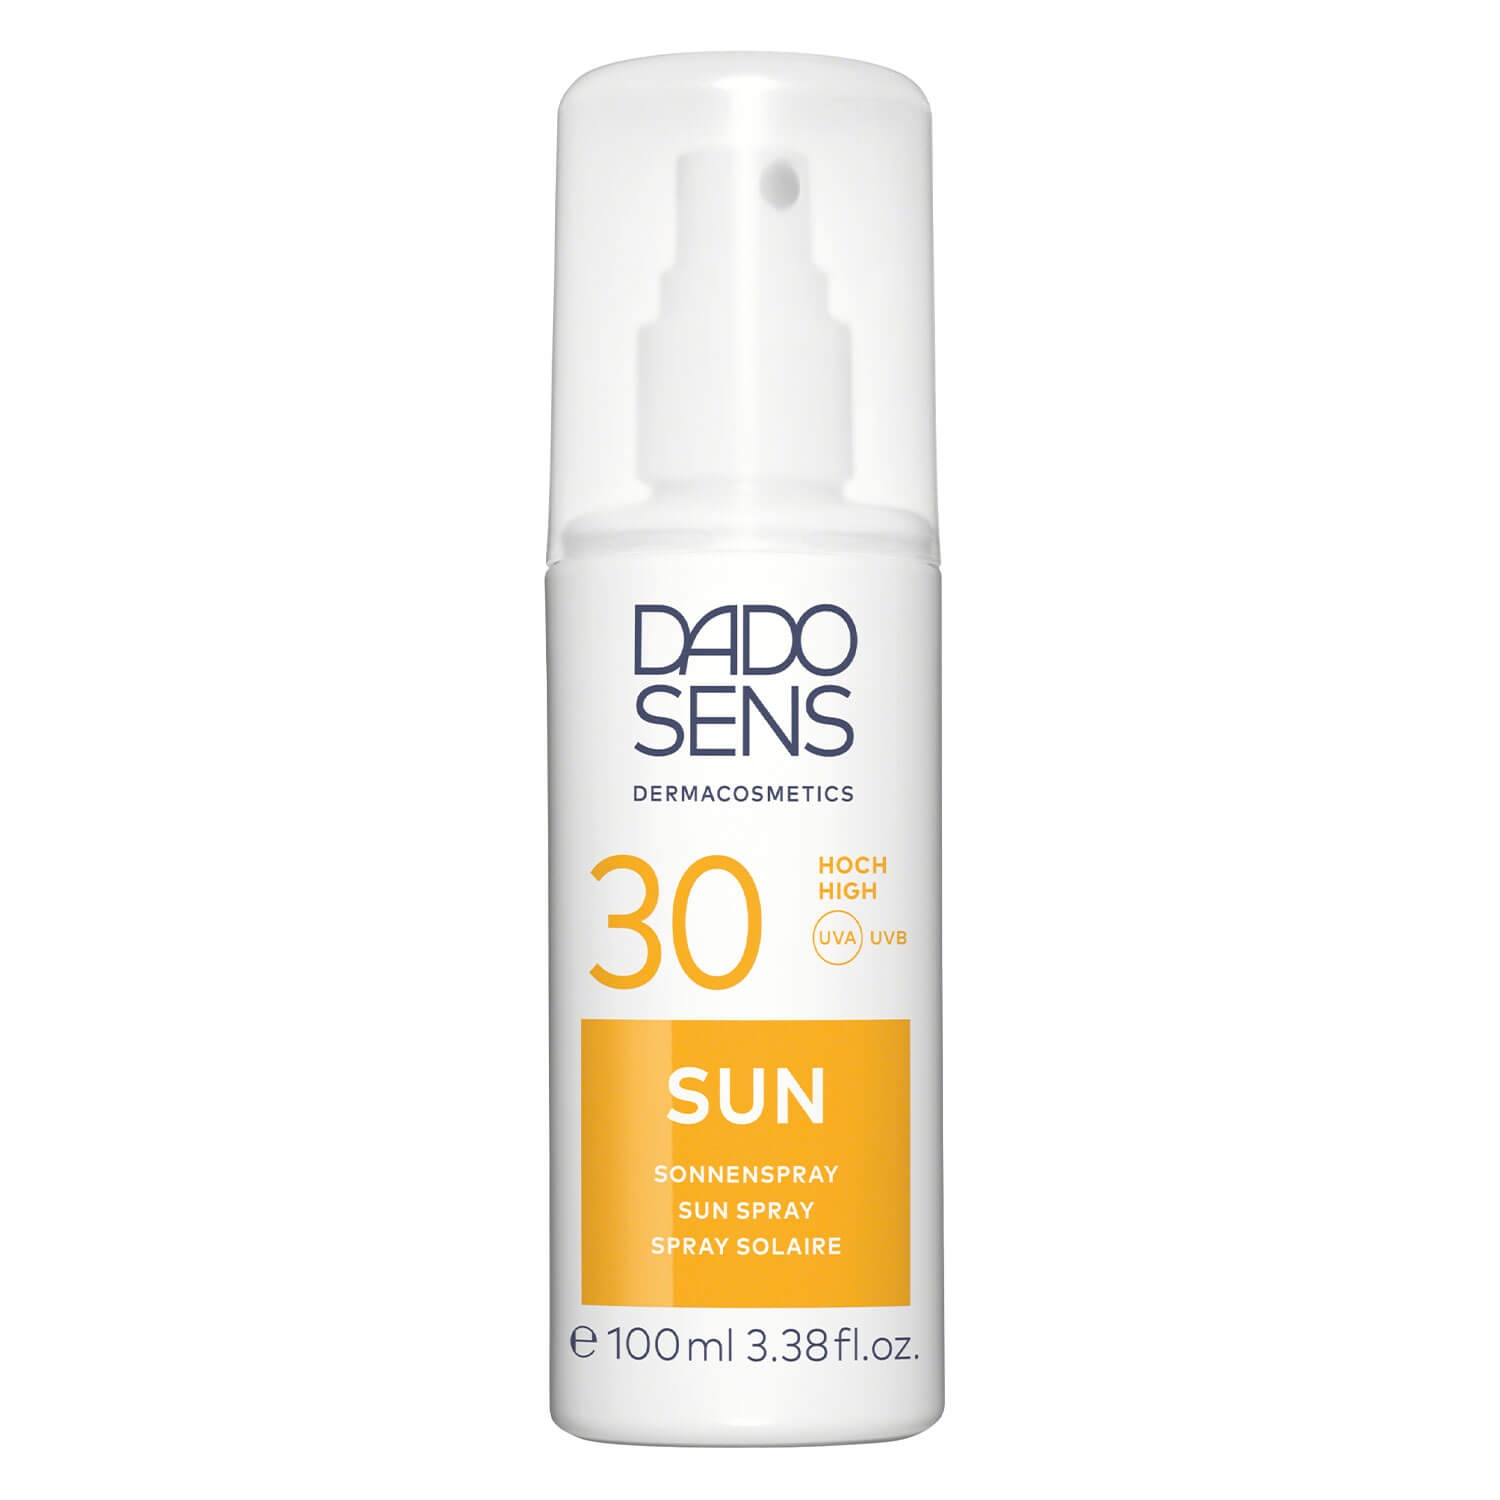 Produktbild von DADO SENS SUN - Sonnenspray SPF 30